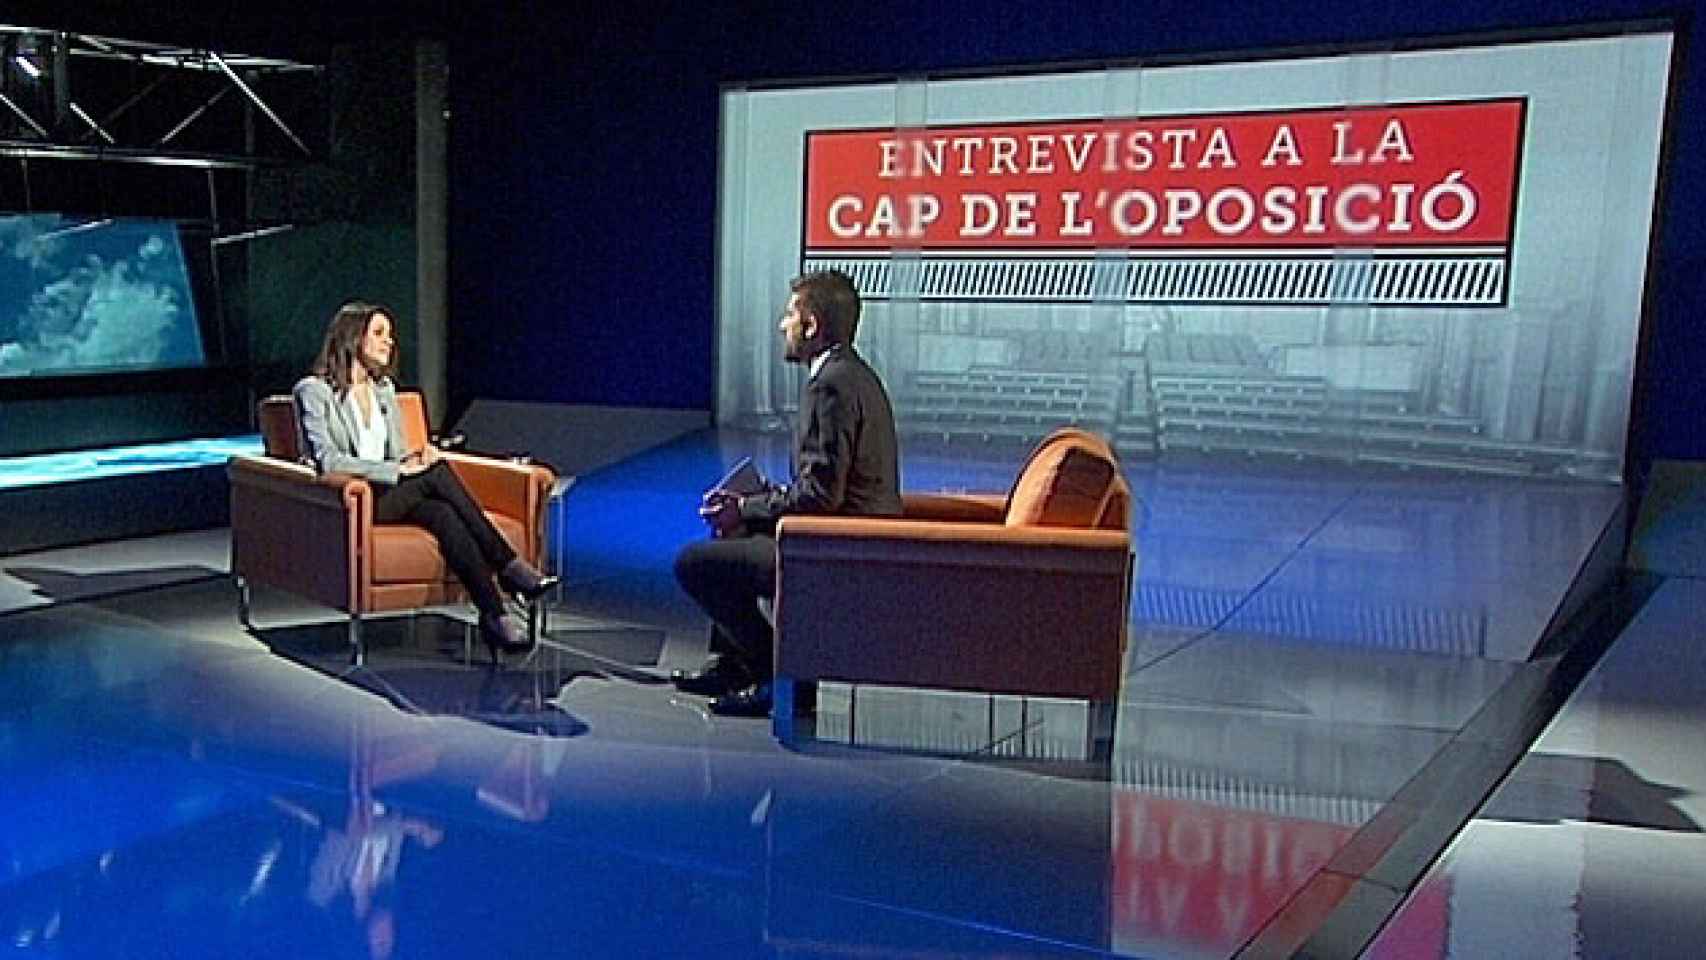 La líder de C's en Cataluña, Inés Arrimadas, entrevistada en TV3 / TV3